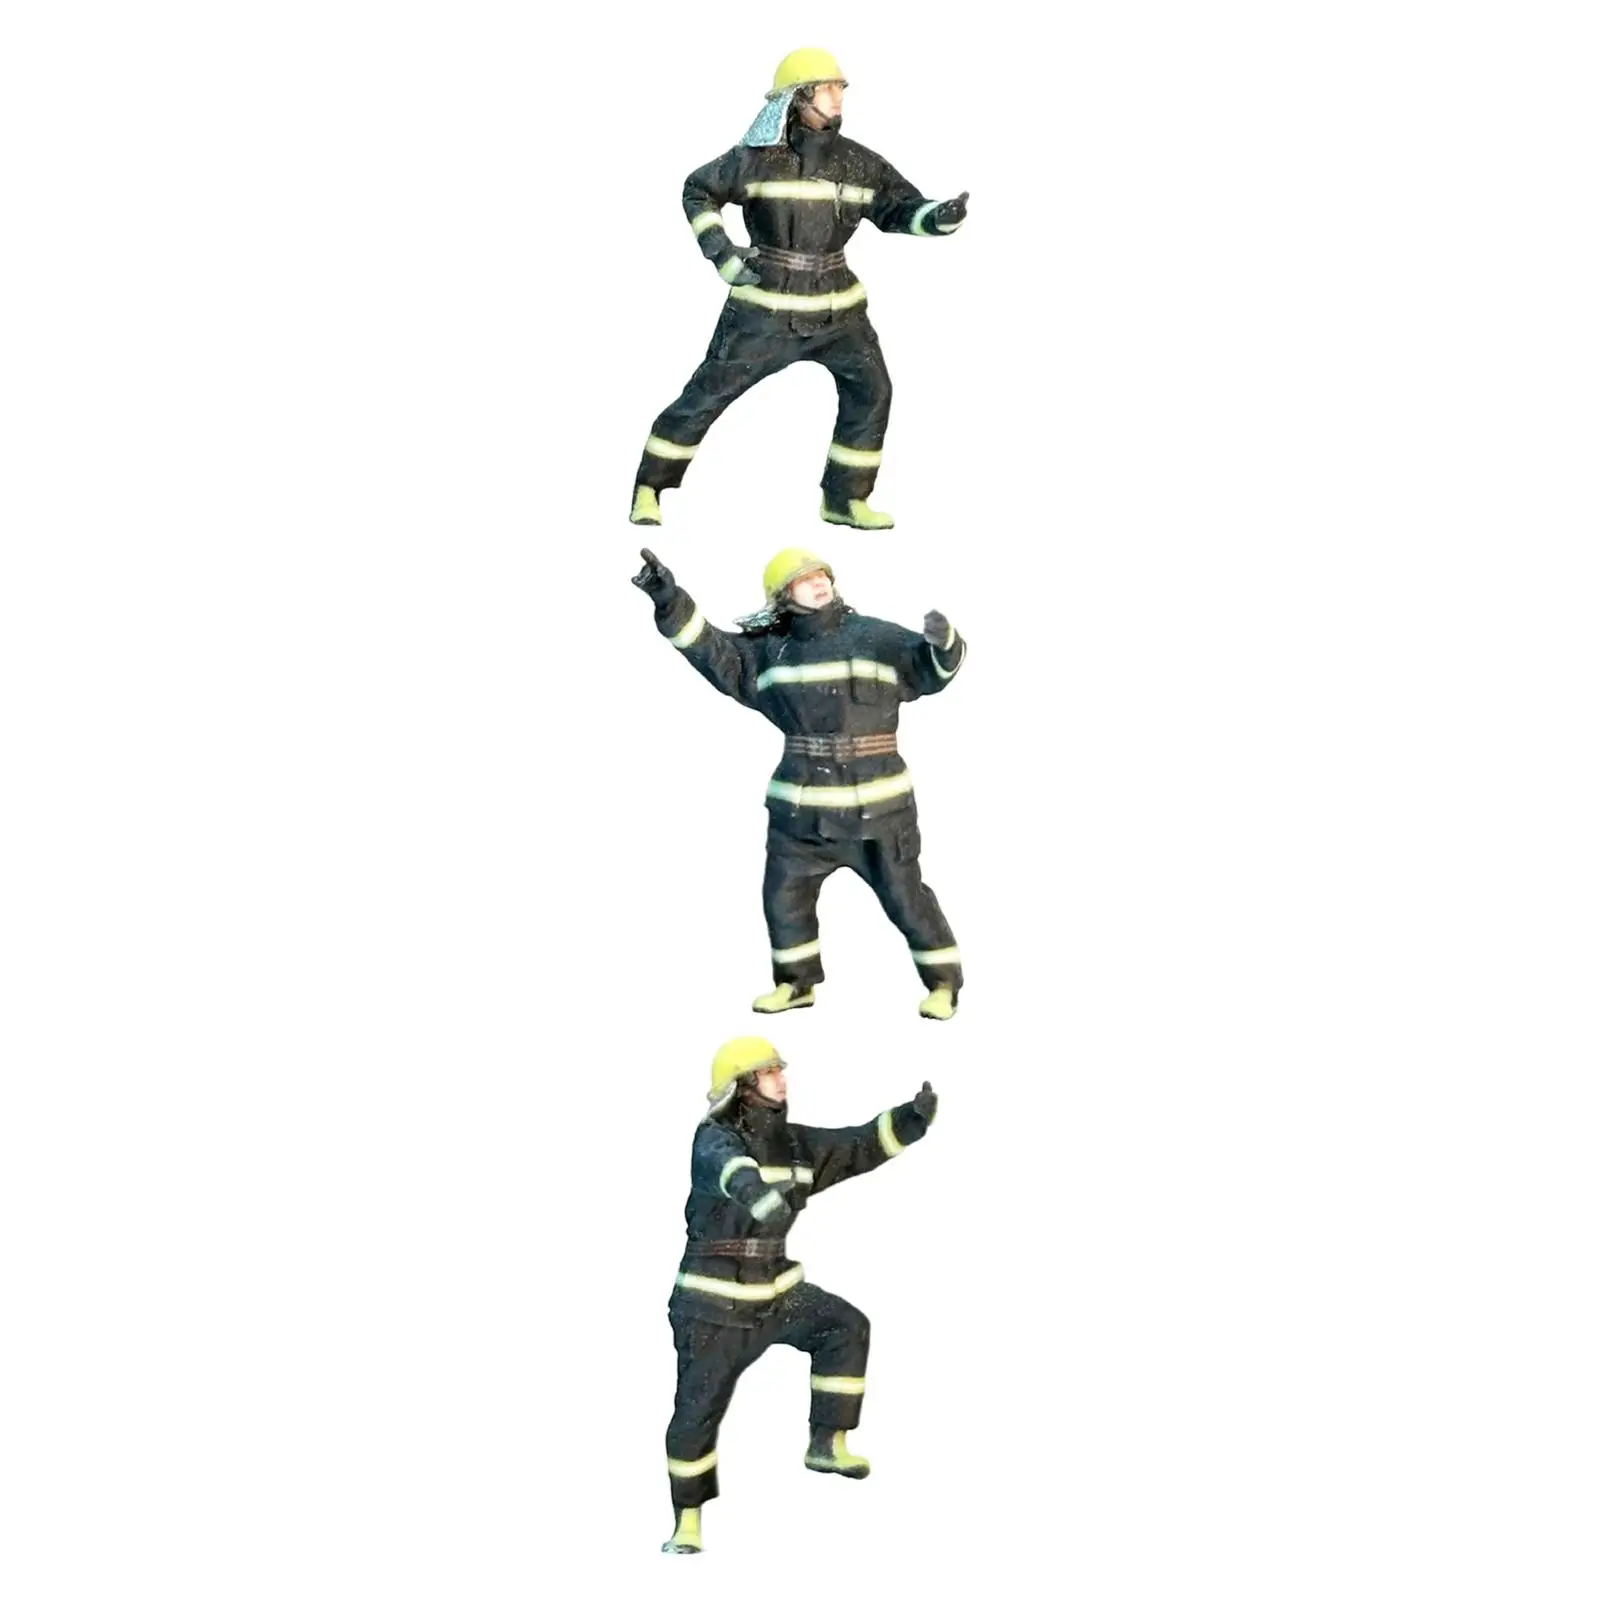 3Pcs Fire Alarm Man Figures Tiny Firefighter People Figurine for DIY Scene